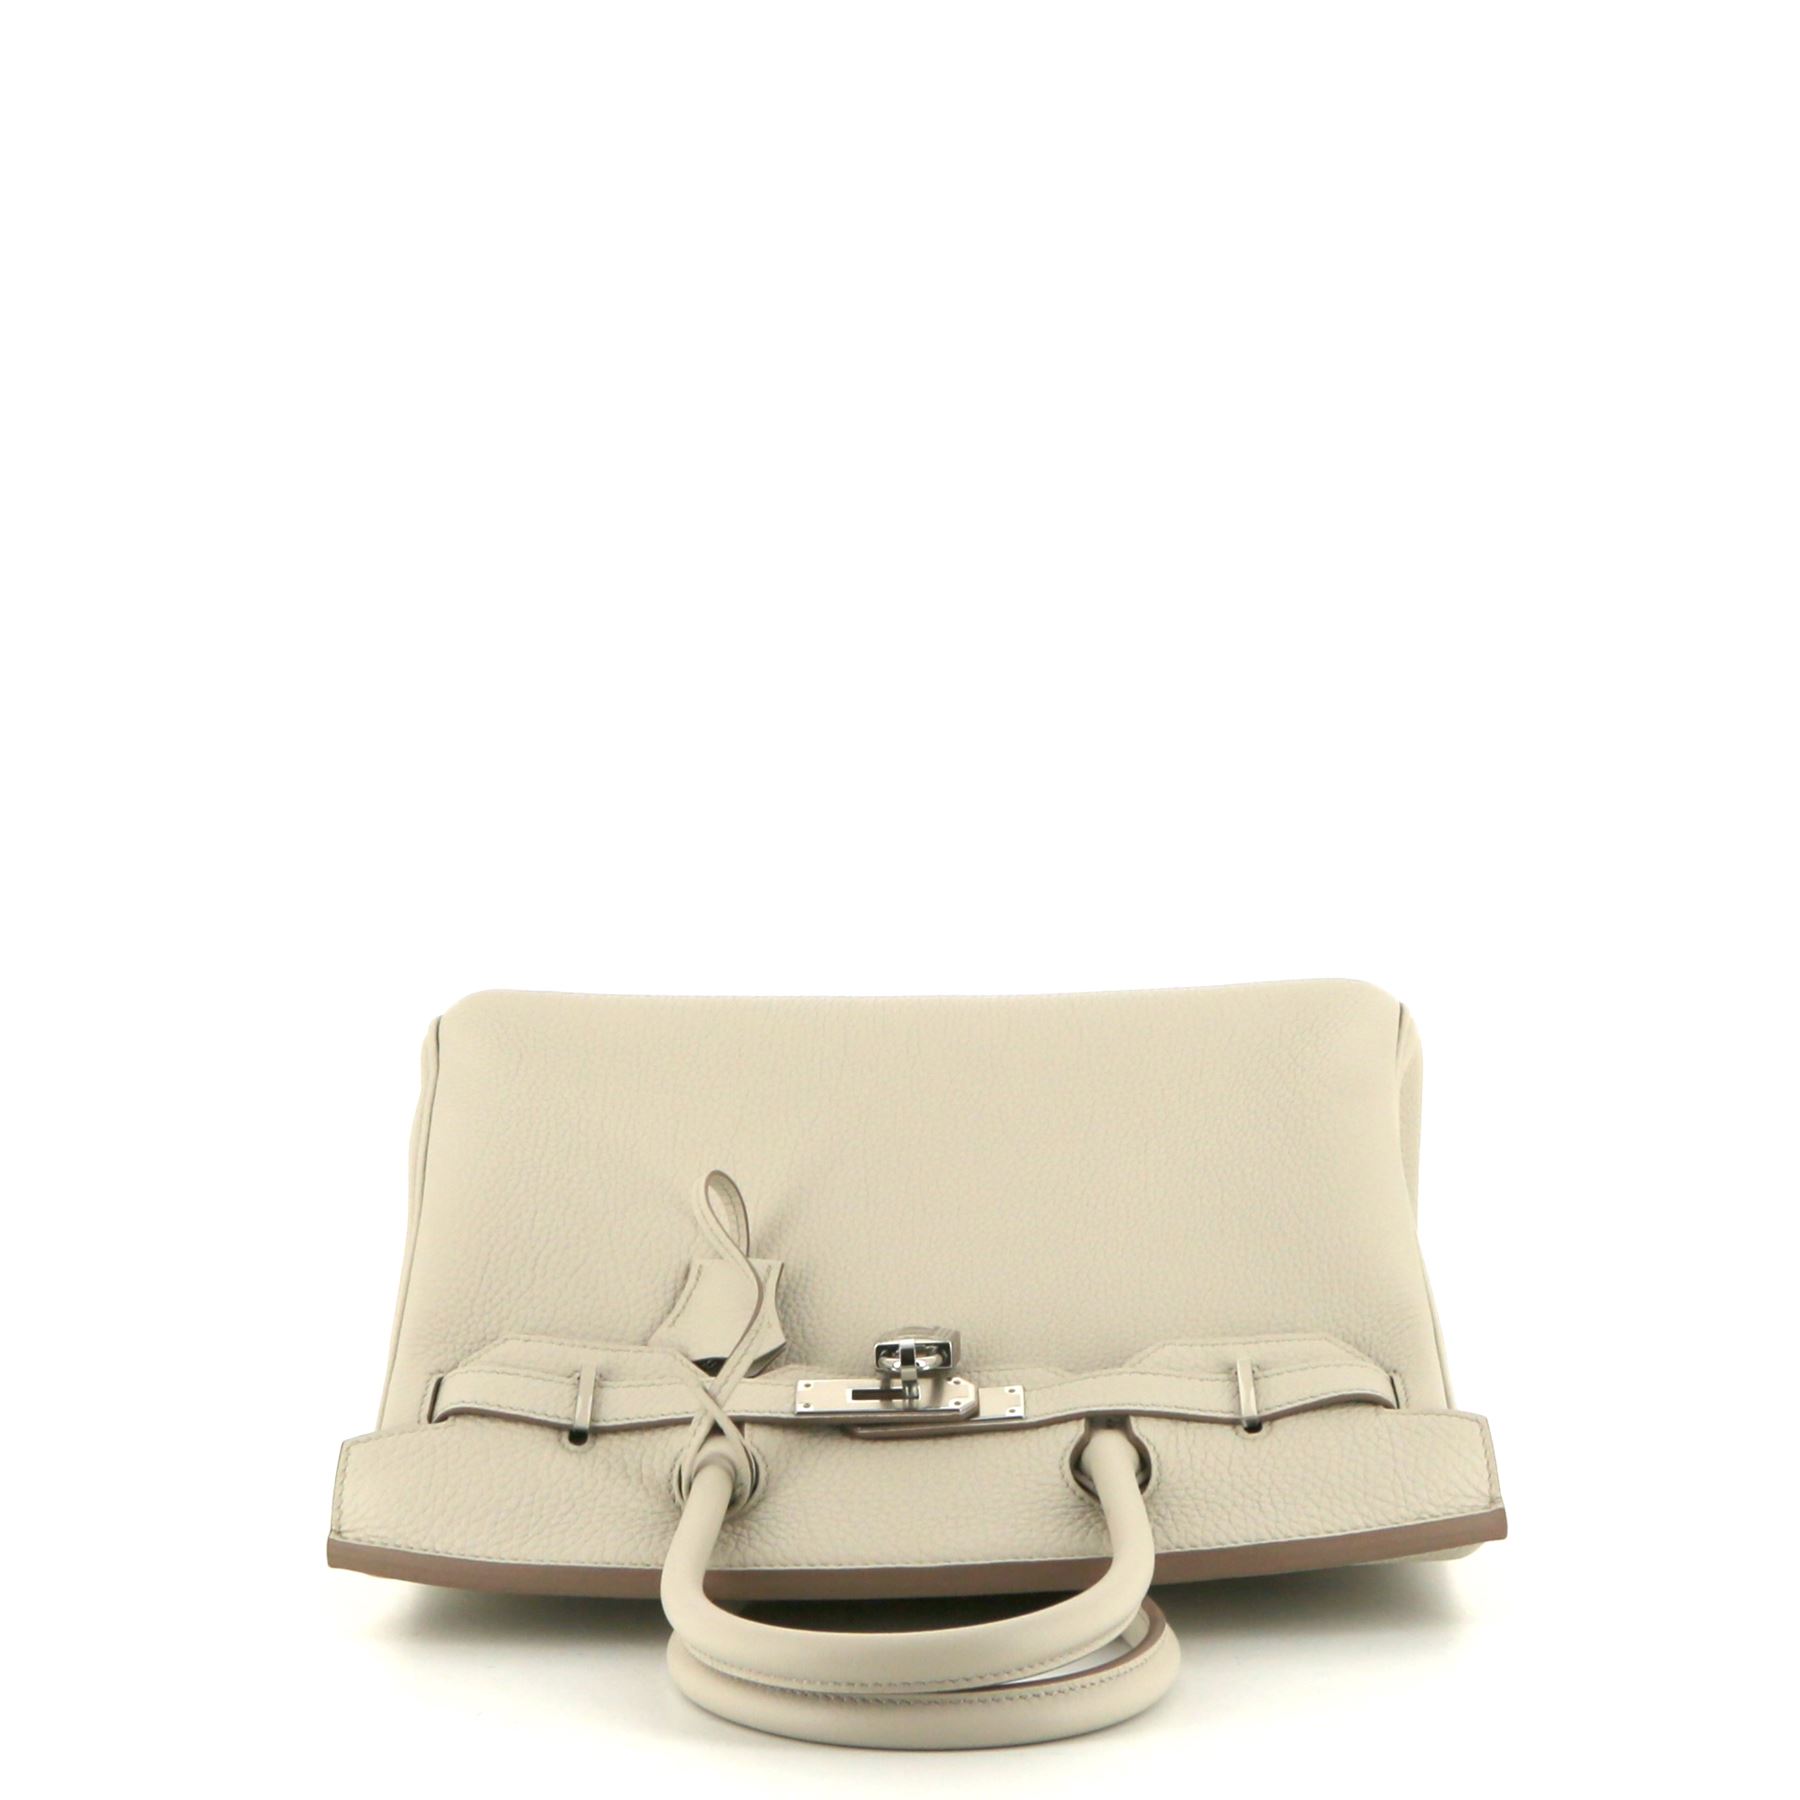 Hermès Birkin Handbag 392582 | Collector Square